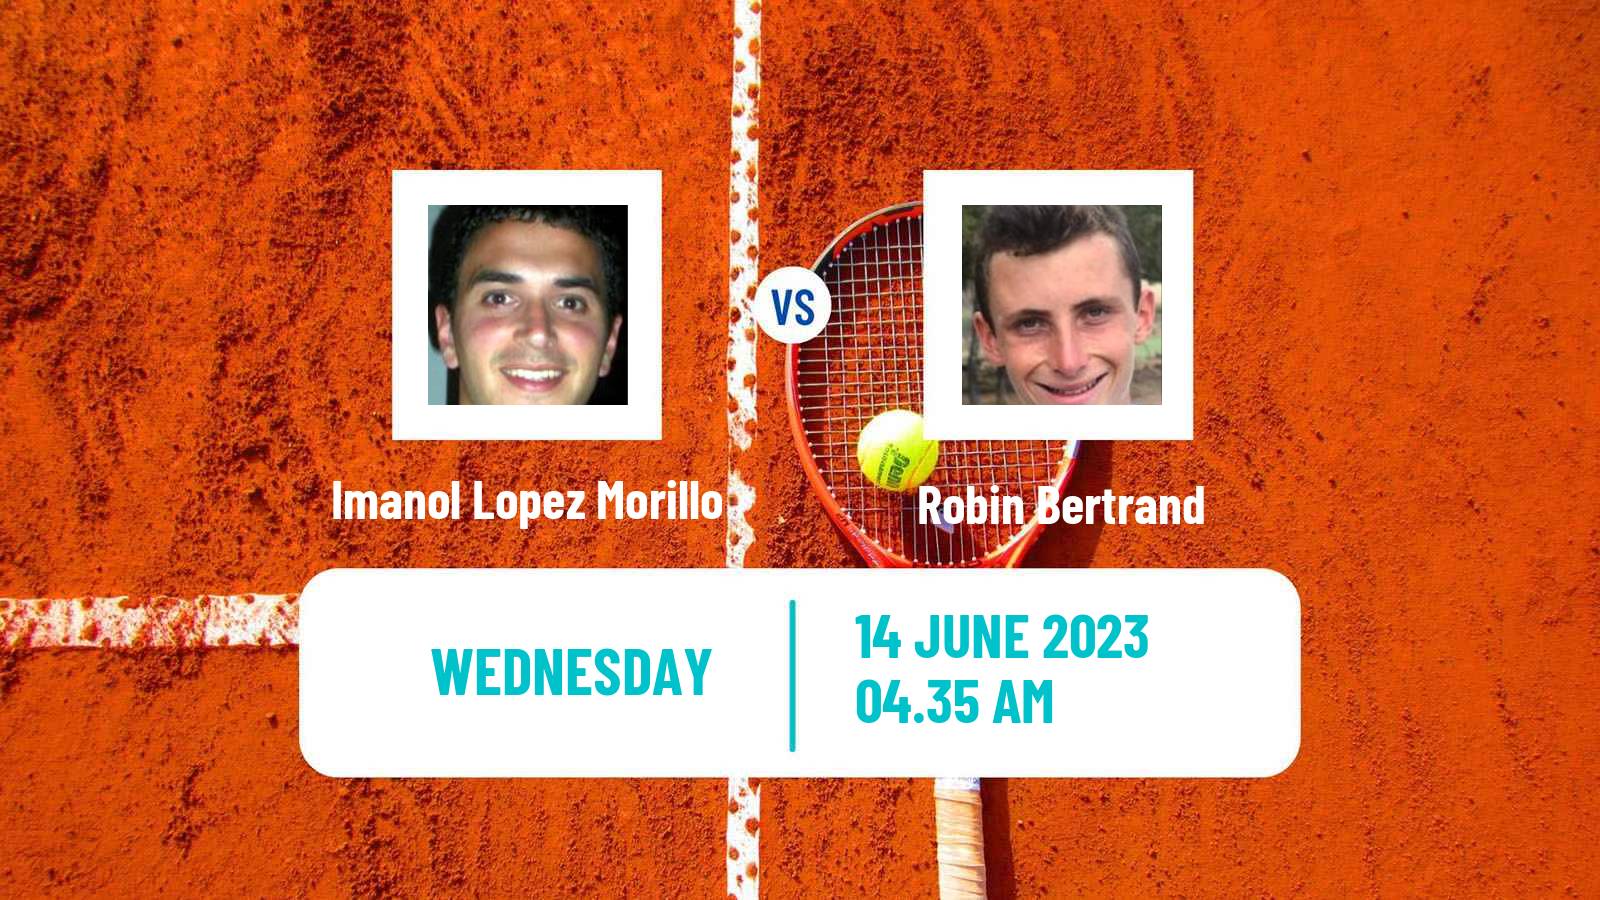 Tennis ITF M25 Martos Men Imanol Lopez Morillo - Robin Bertrand